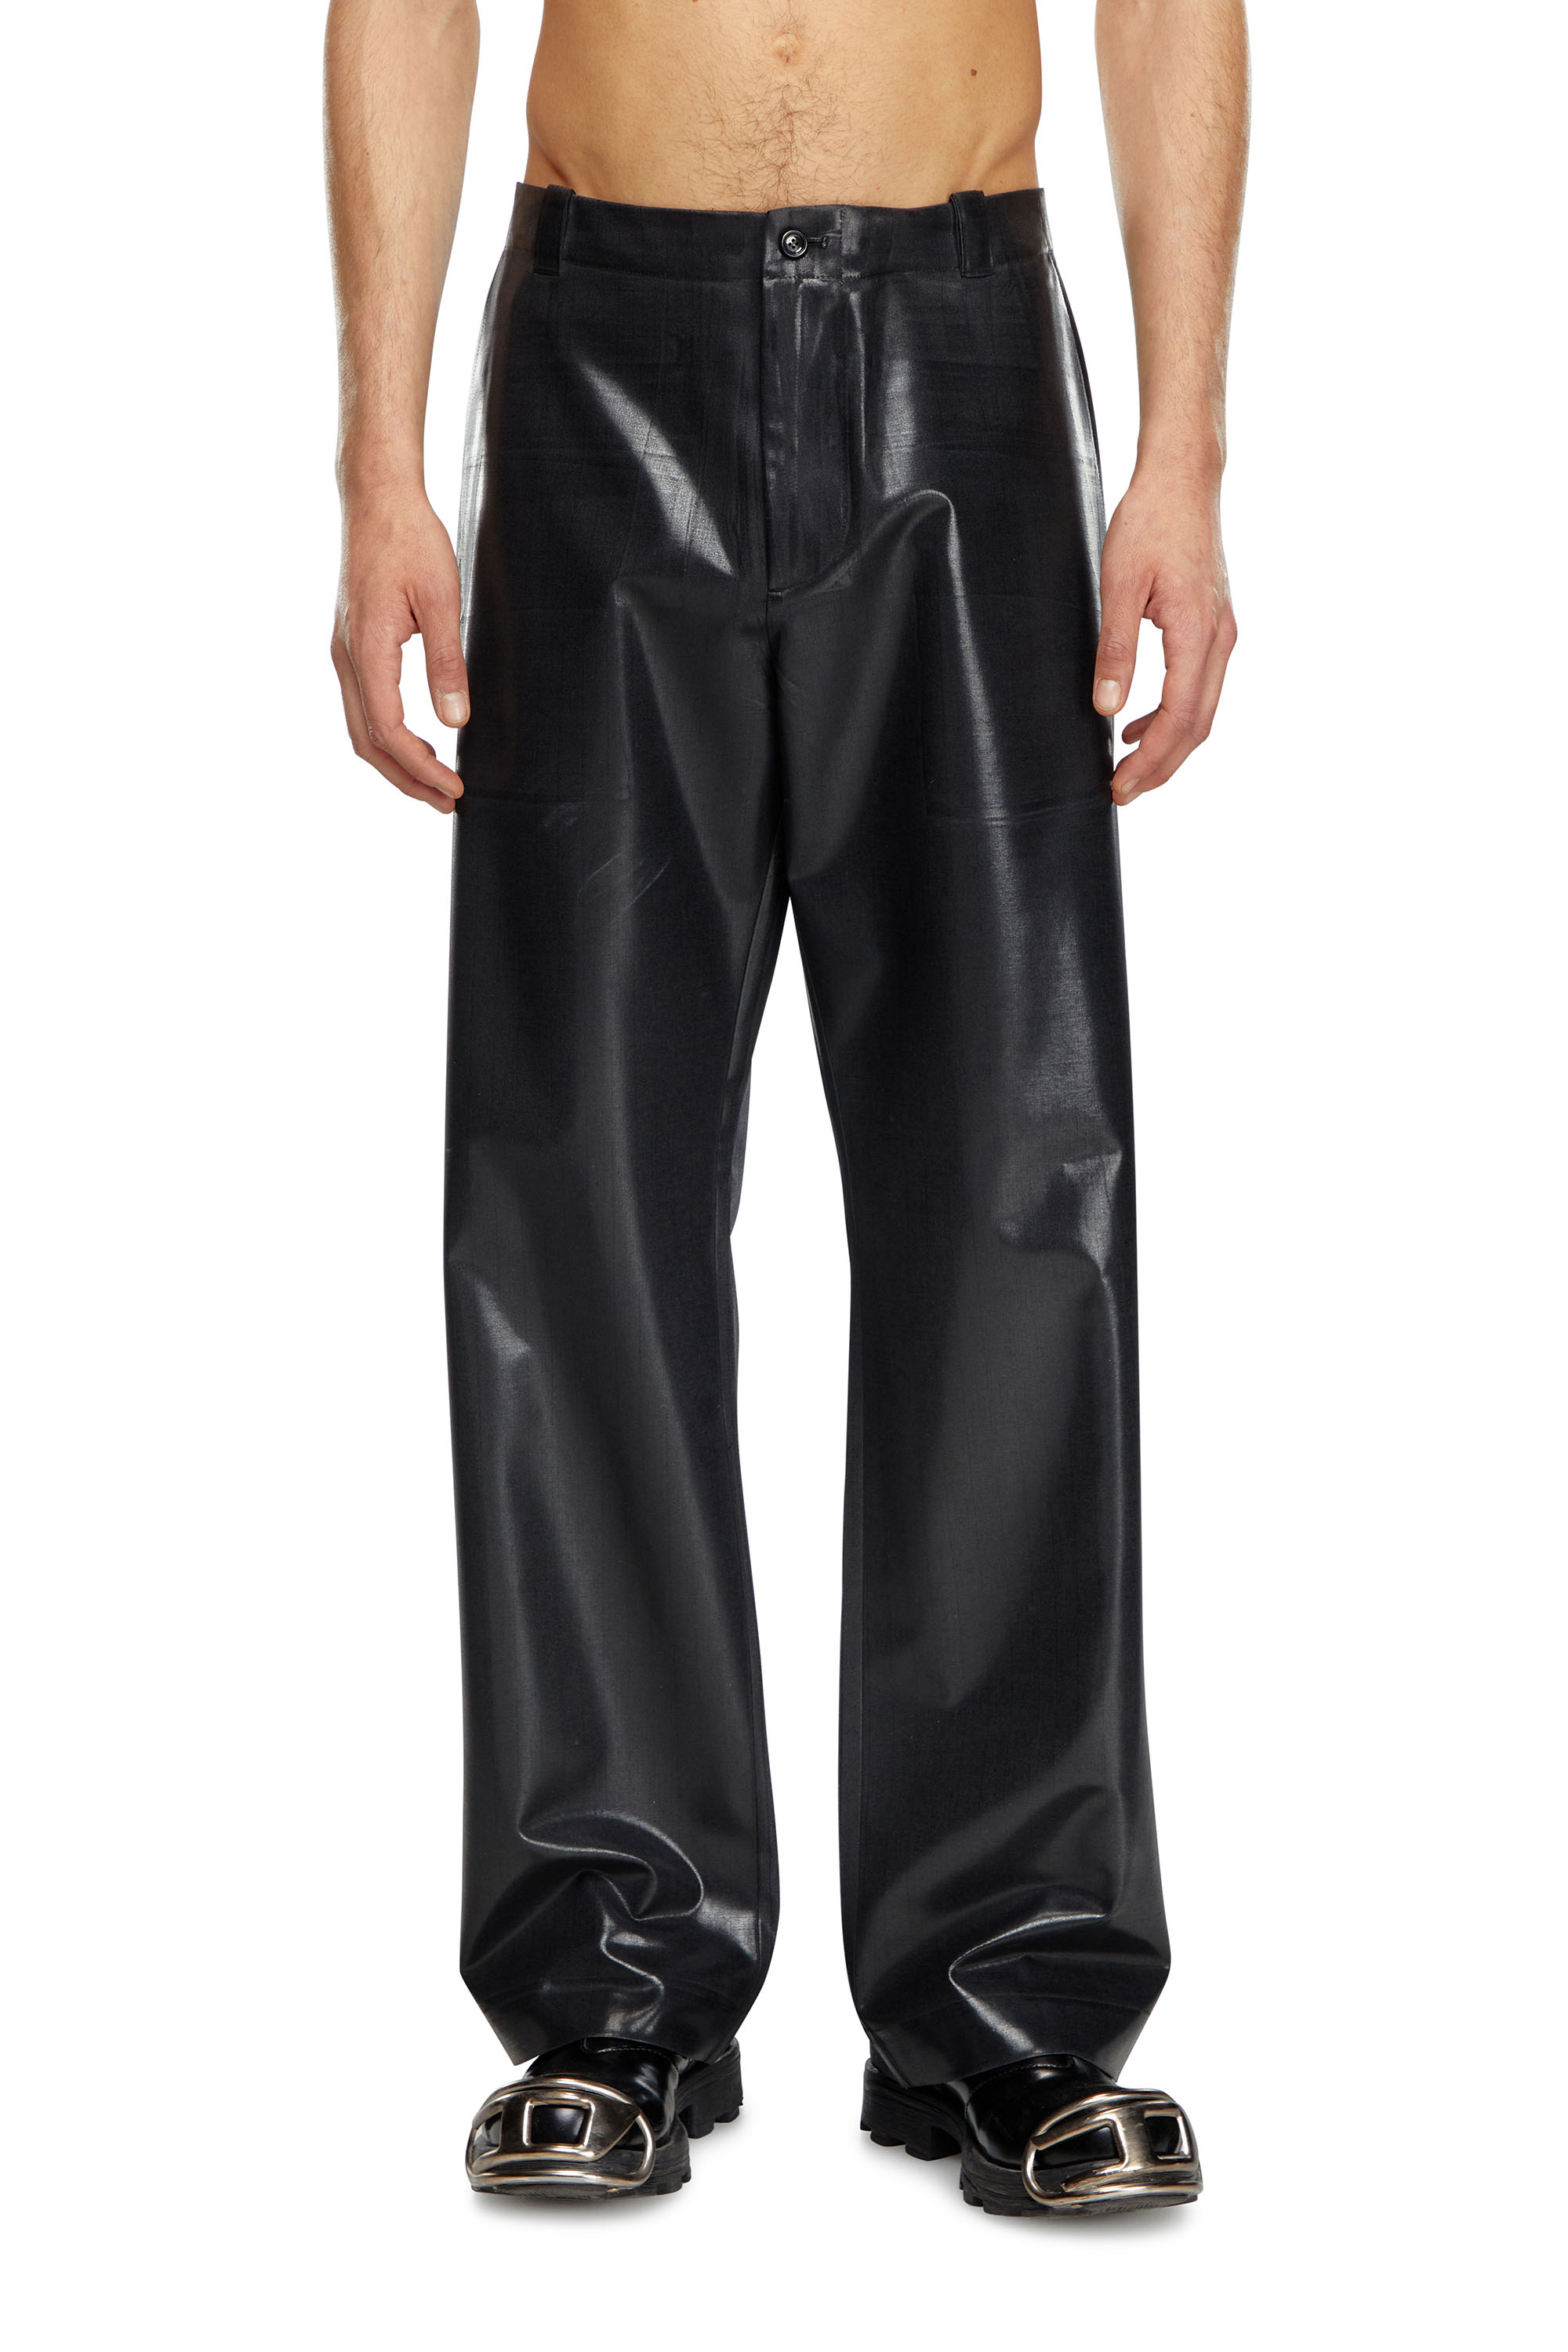 Diesel - P-STANLEY, Homme Pantalon à fines rayures avec devant enduit in Noir - Image 1